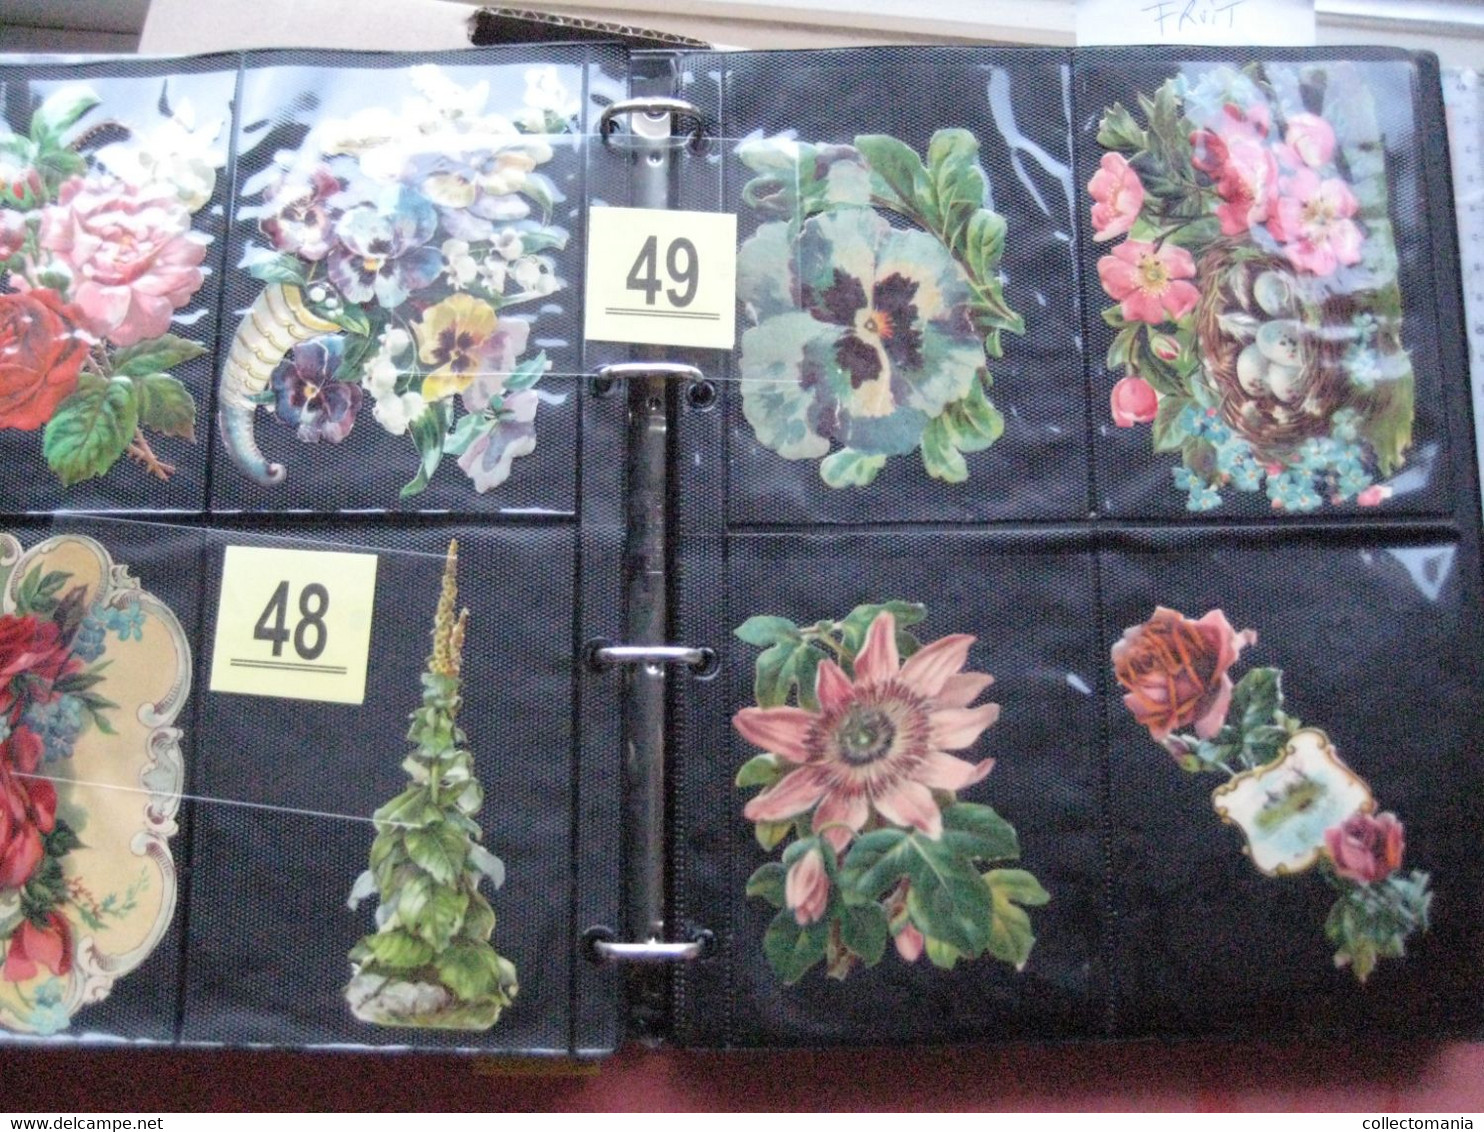 SCRAPS_MAP27 COLLECTION anno 1880 à 1900 Litho prints (count yourself ) Big FRUIT & Flowers Fleurs bloemen